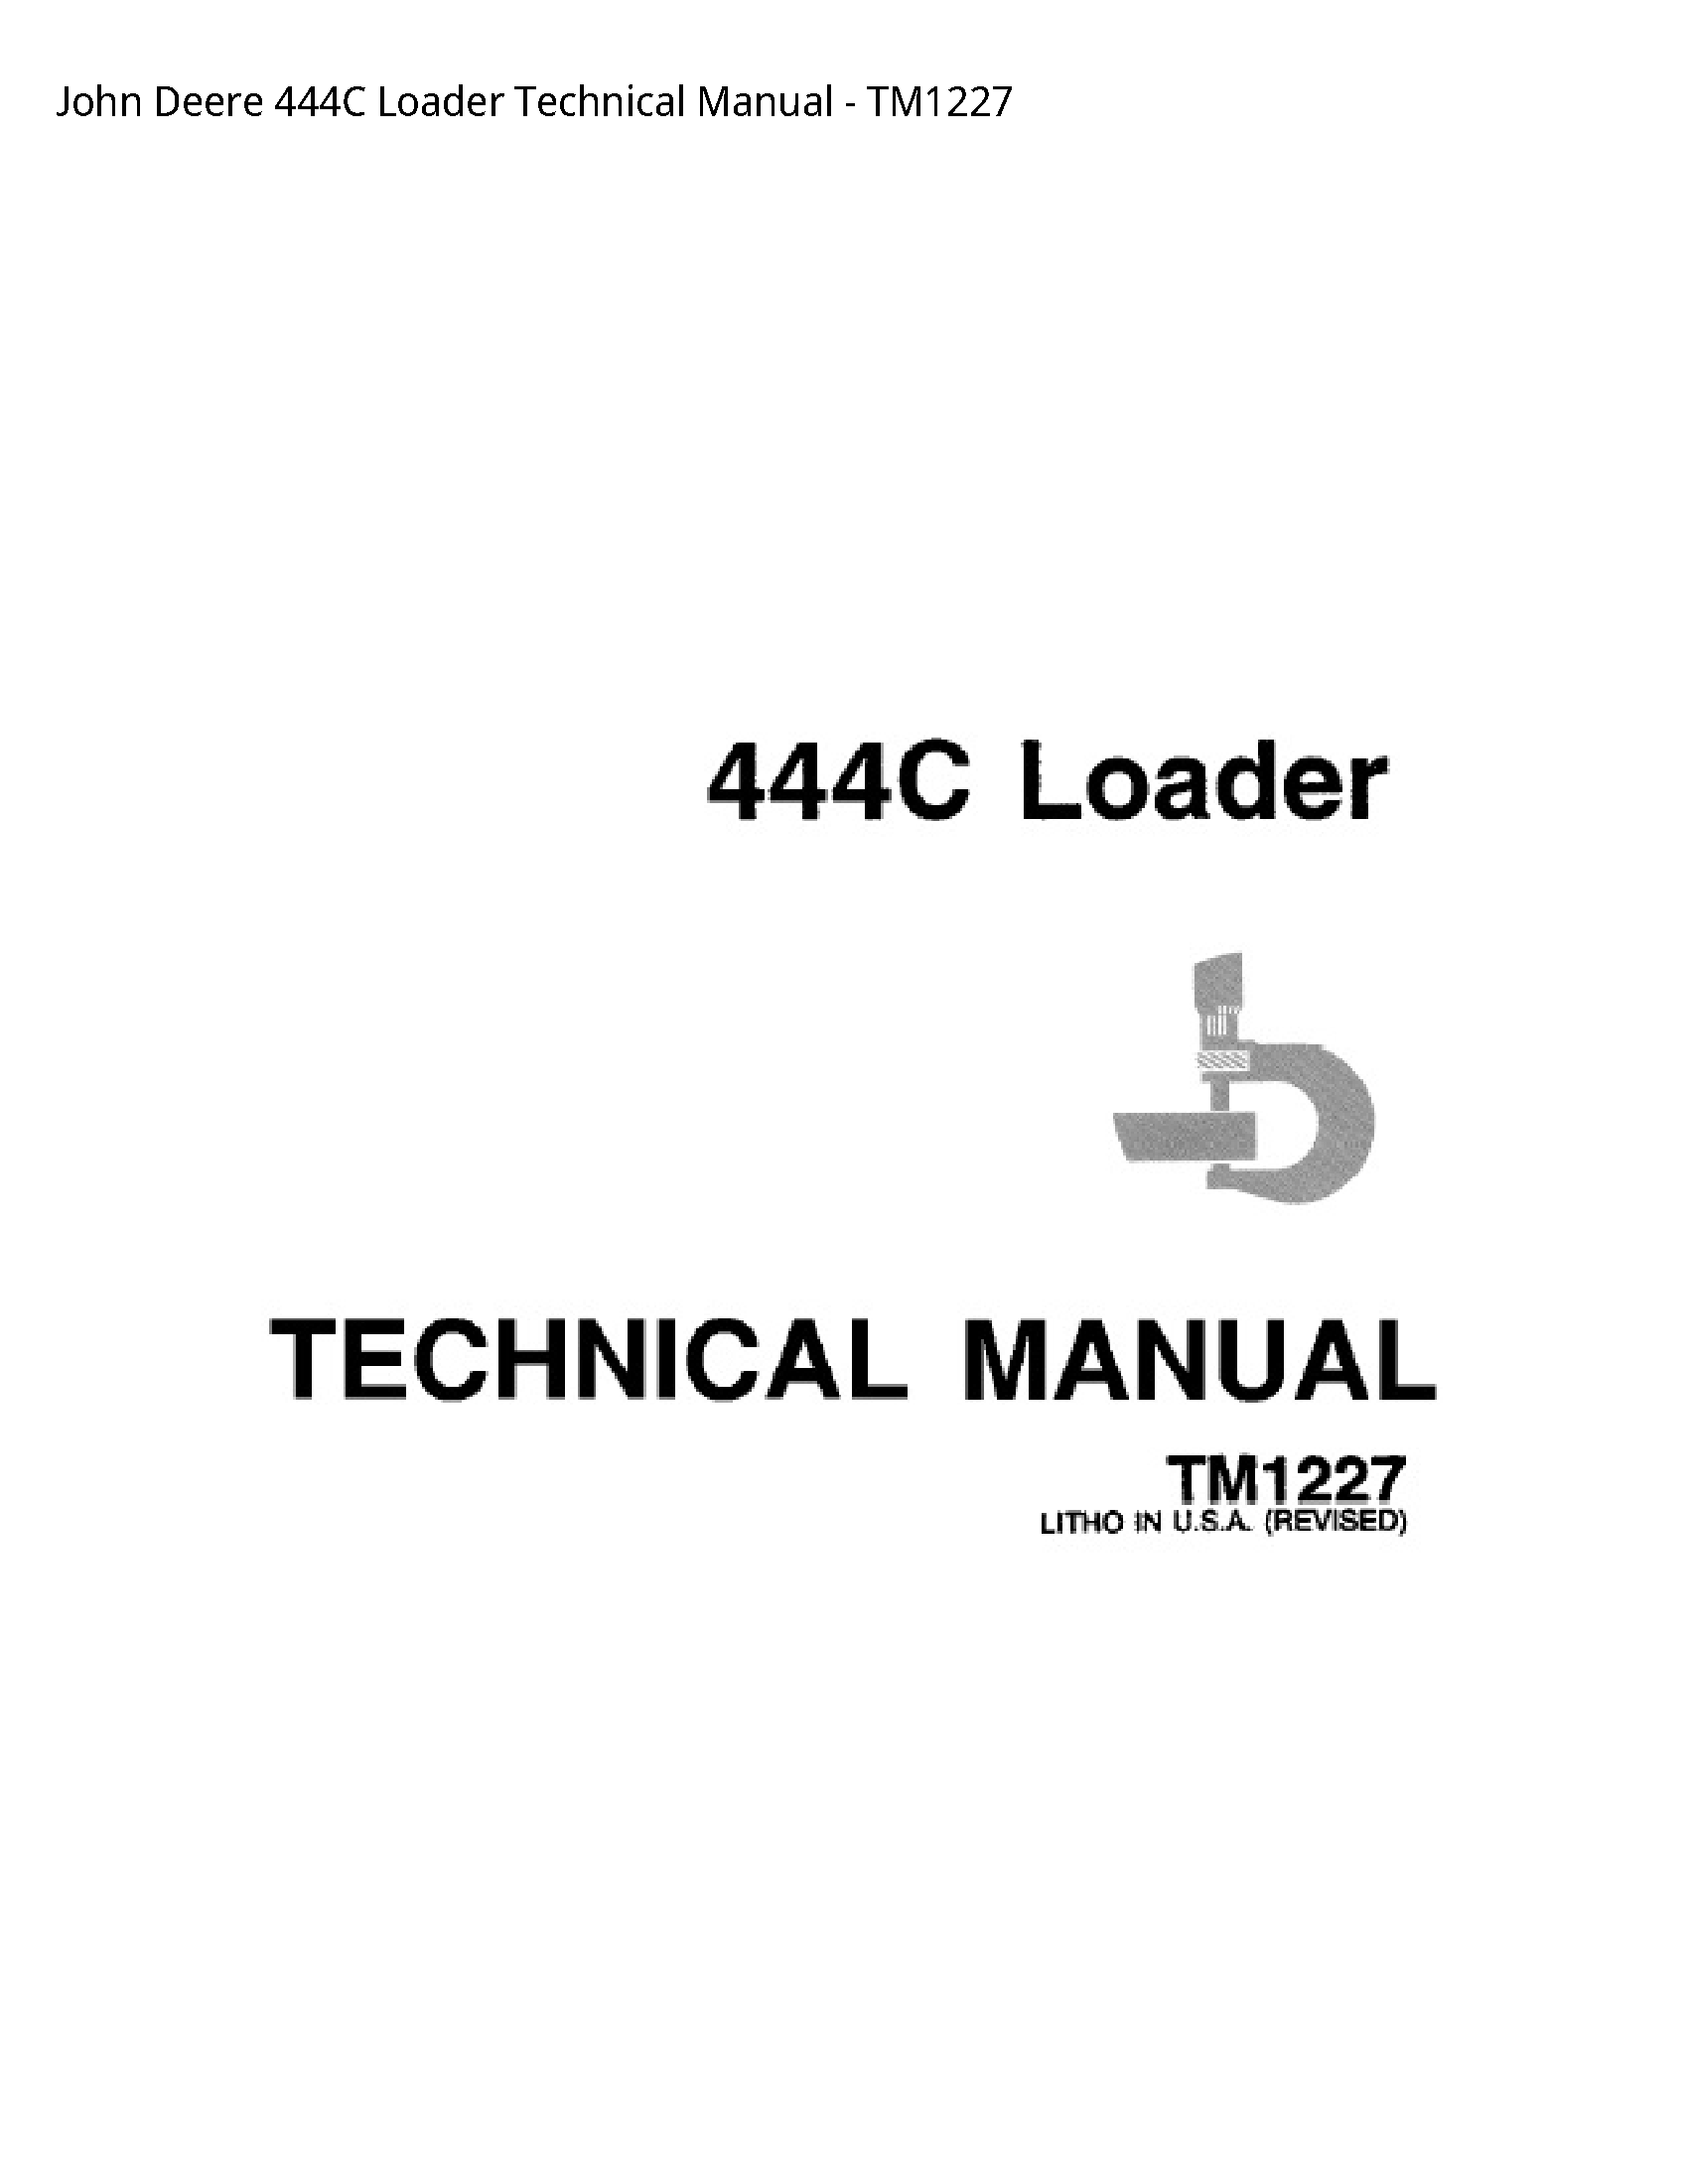 John Deere 444C Loader Technical manual